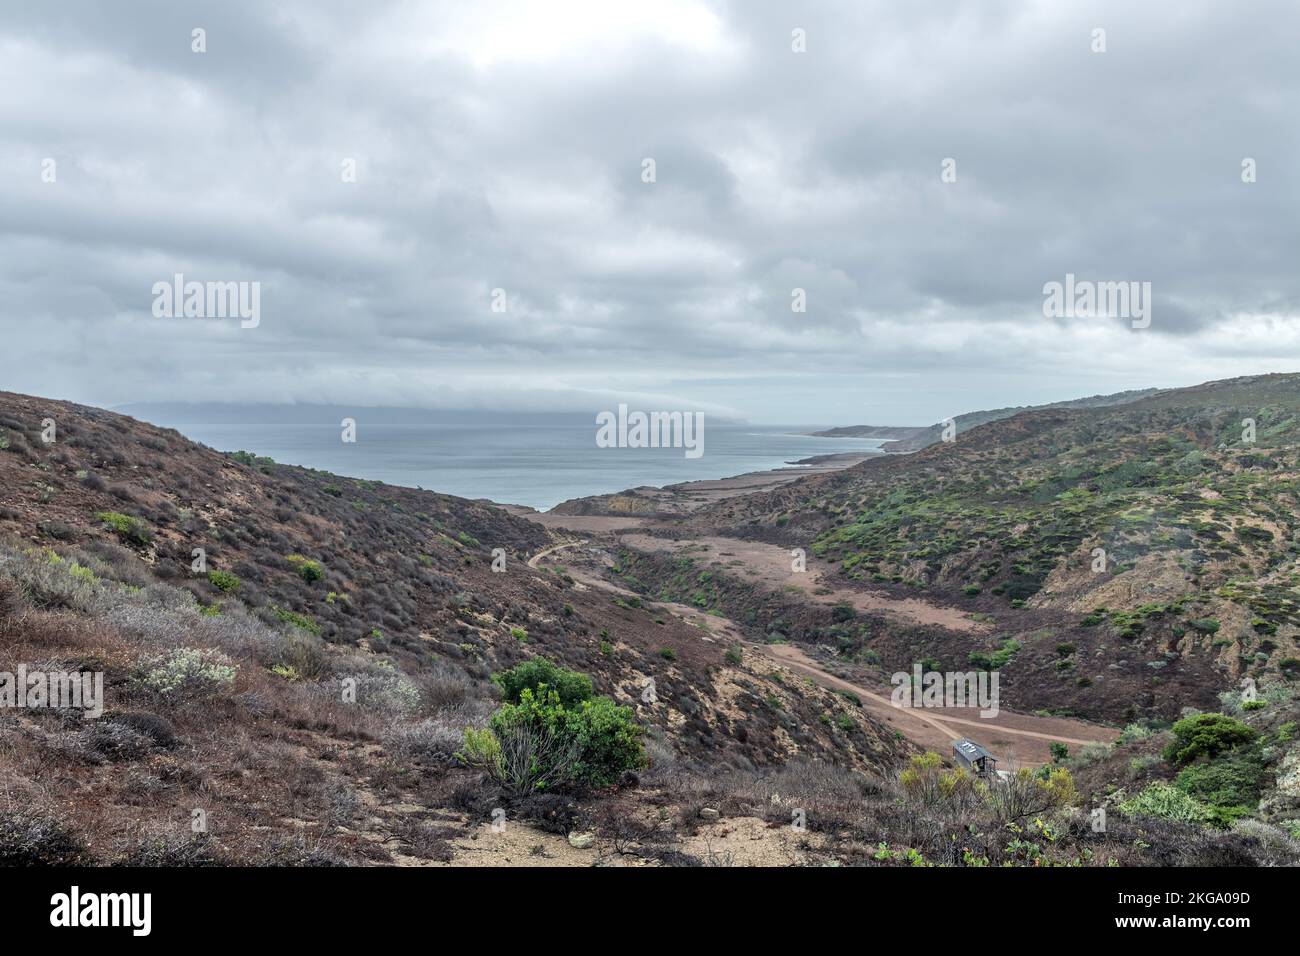 Vista del océano desde uno de los puntos más altos de la Isla Santa Rosa, una ruta de senderismo que está a dos millas de caminata. Foto de stock